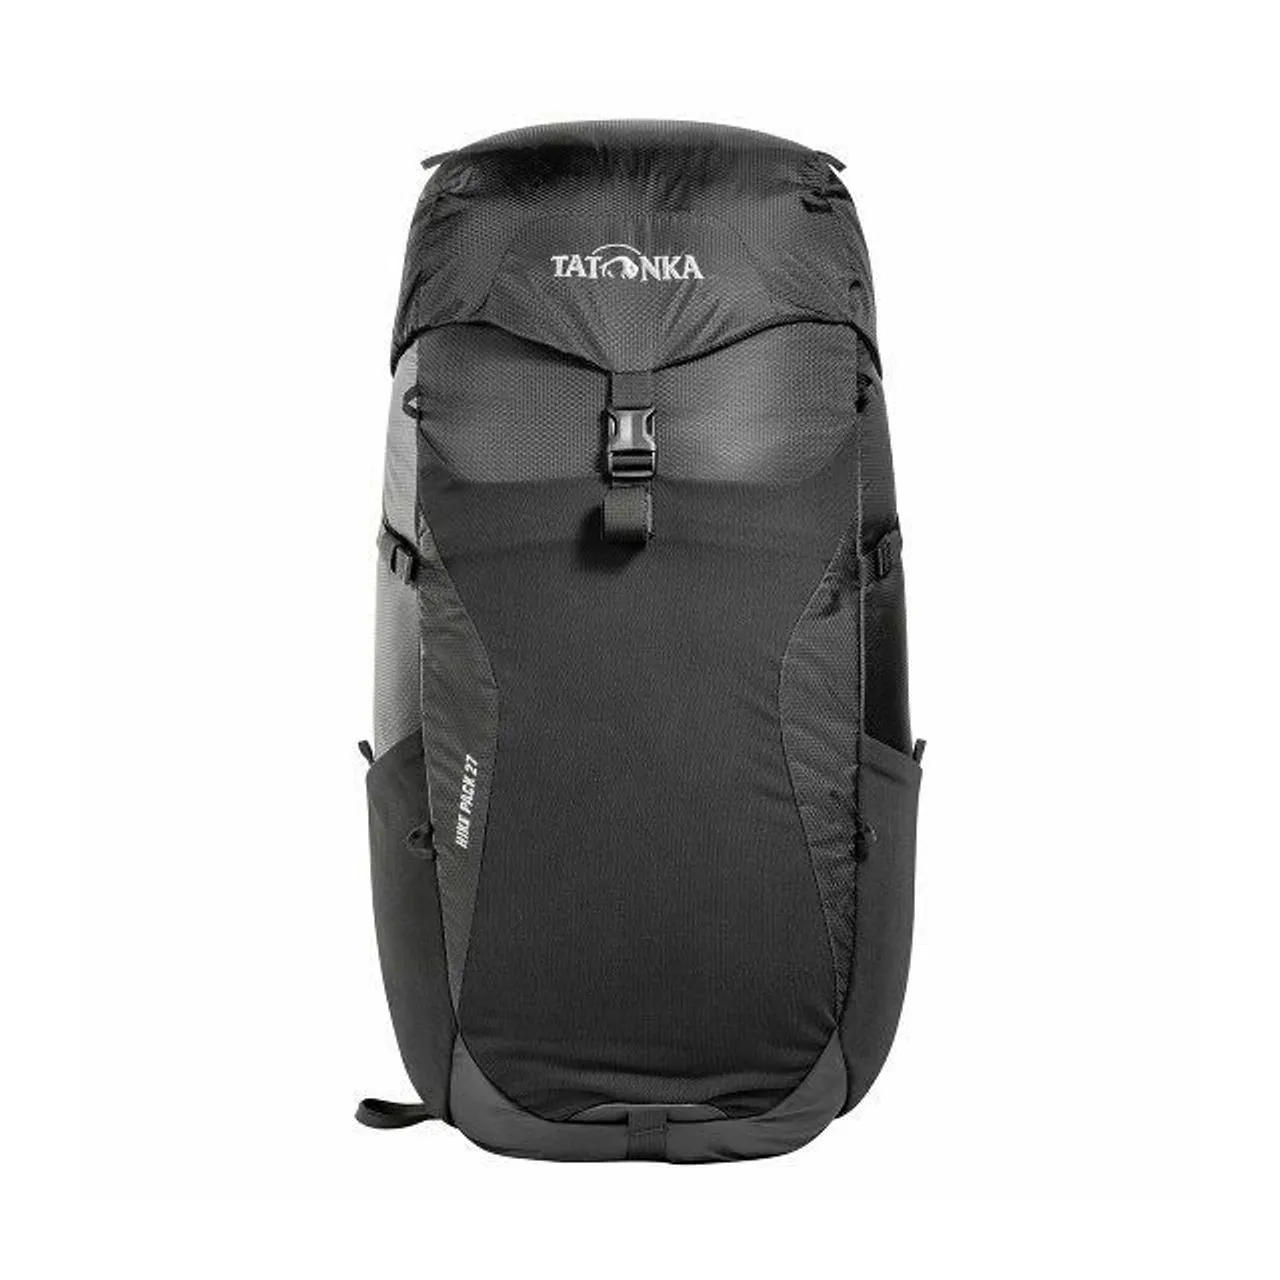 Tatonka Hike Pack Rucksack 54 cm black